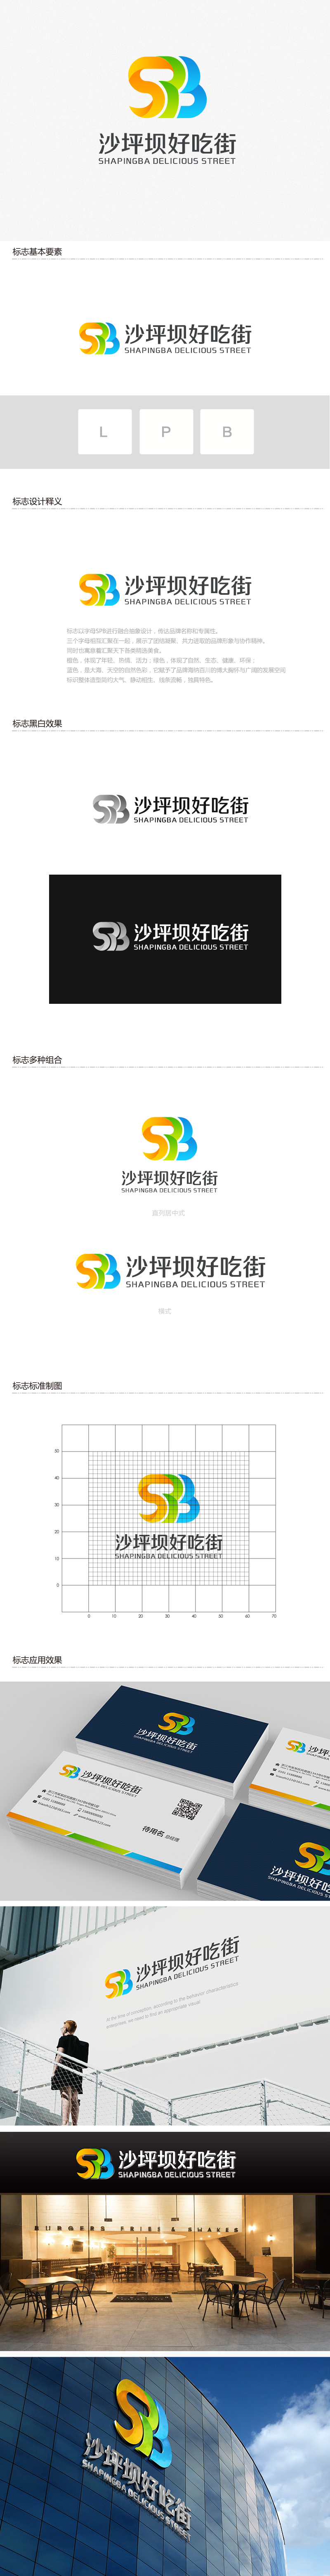 吴晓伟的沙坪坝好吃街（重新编辑需求）logo设计